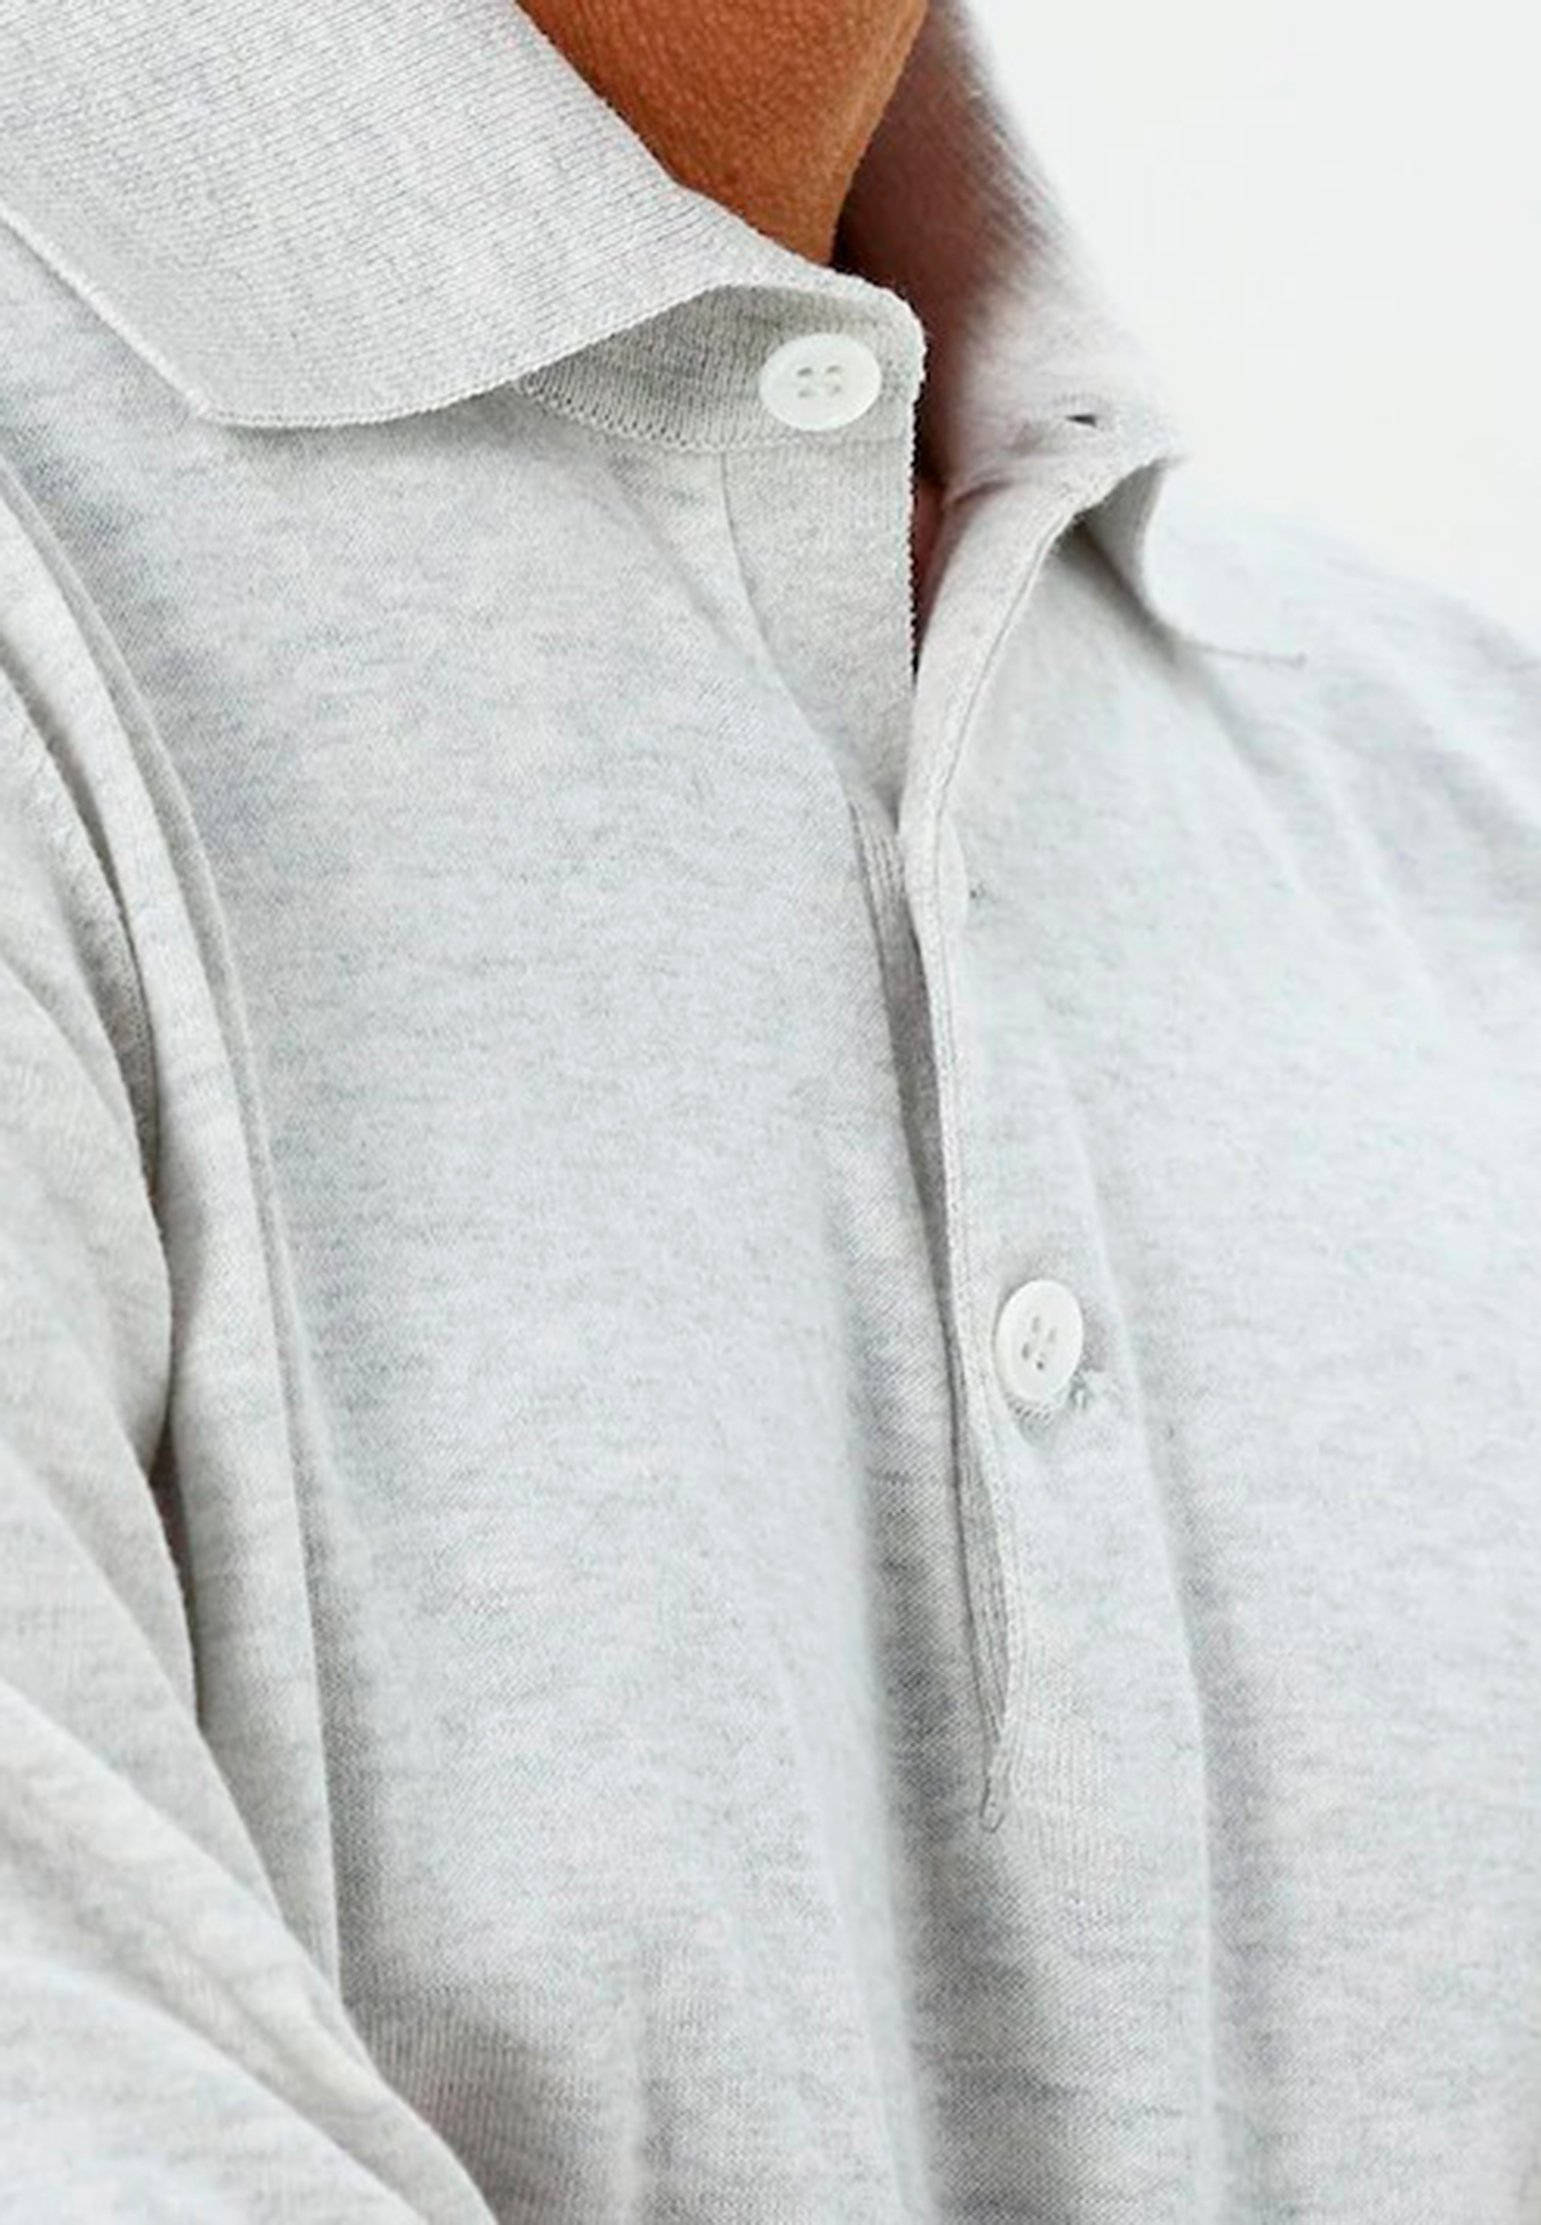 Polo BRUNELLO CUCINELLI Color: light grey (Code: 1188) in online store Allure